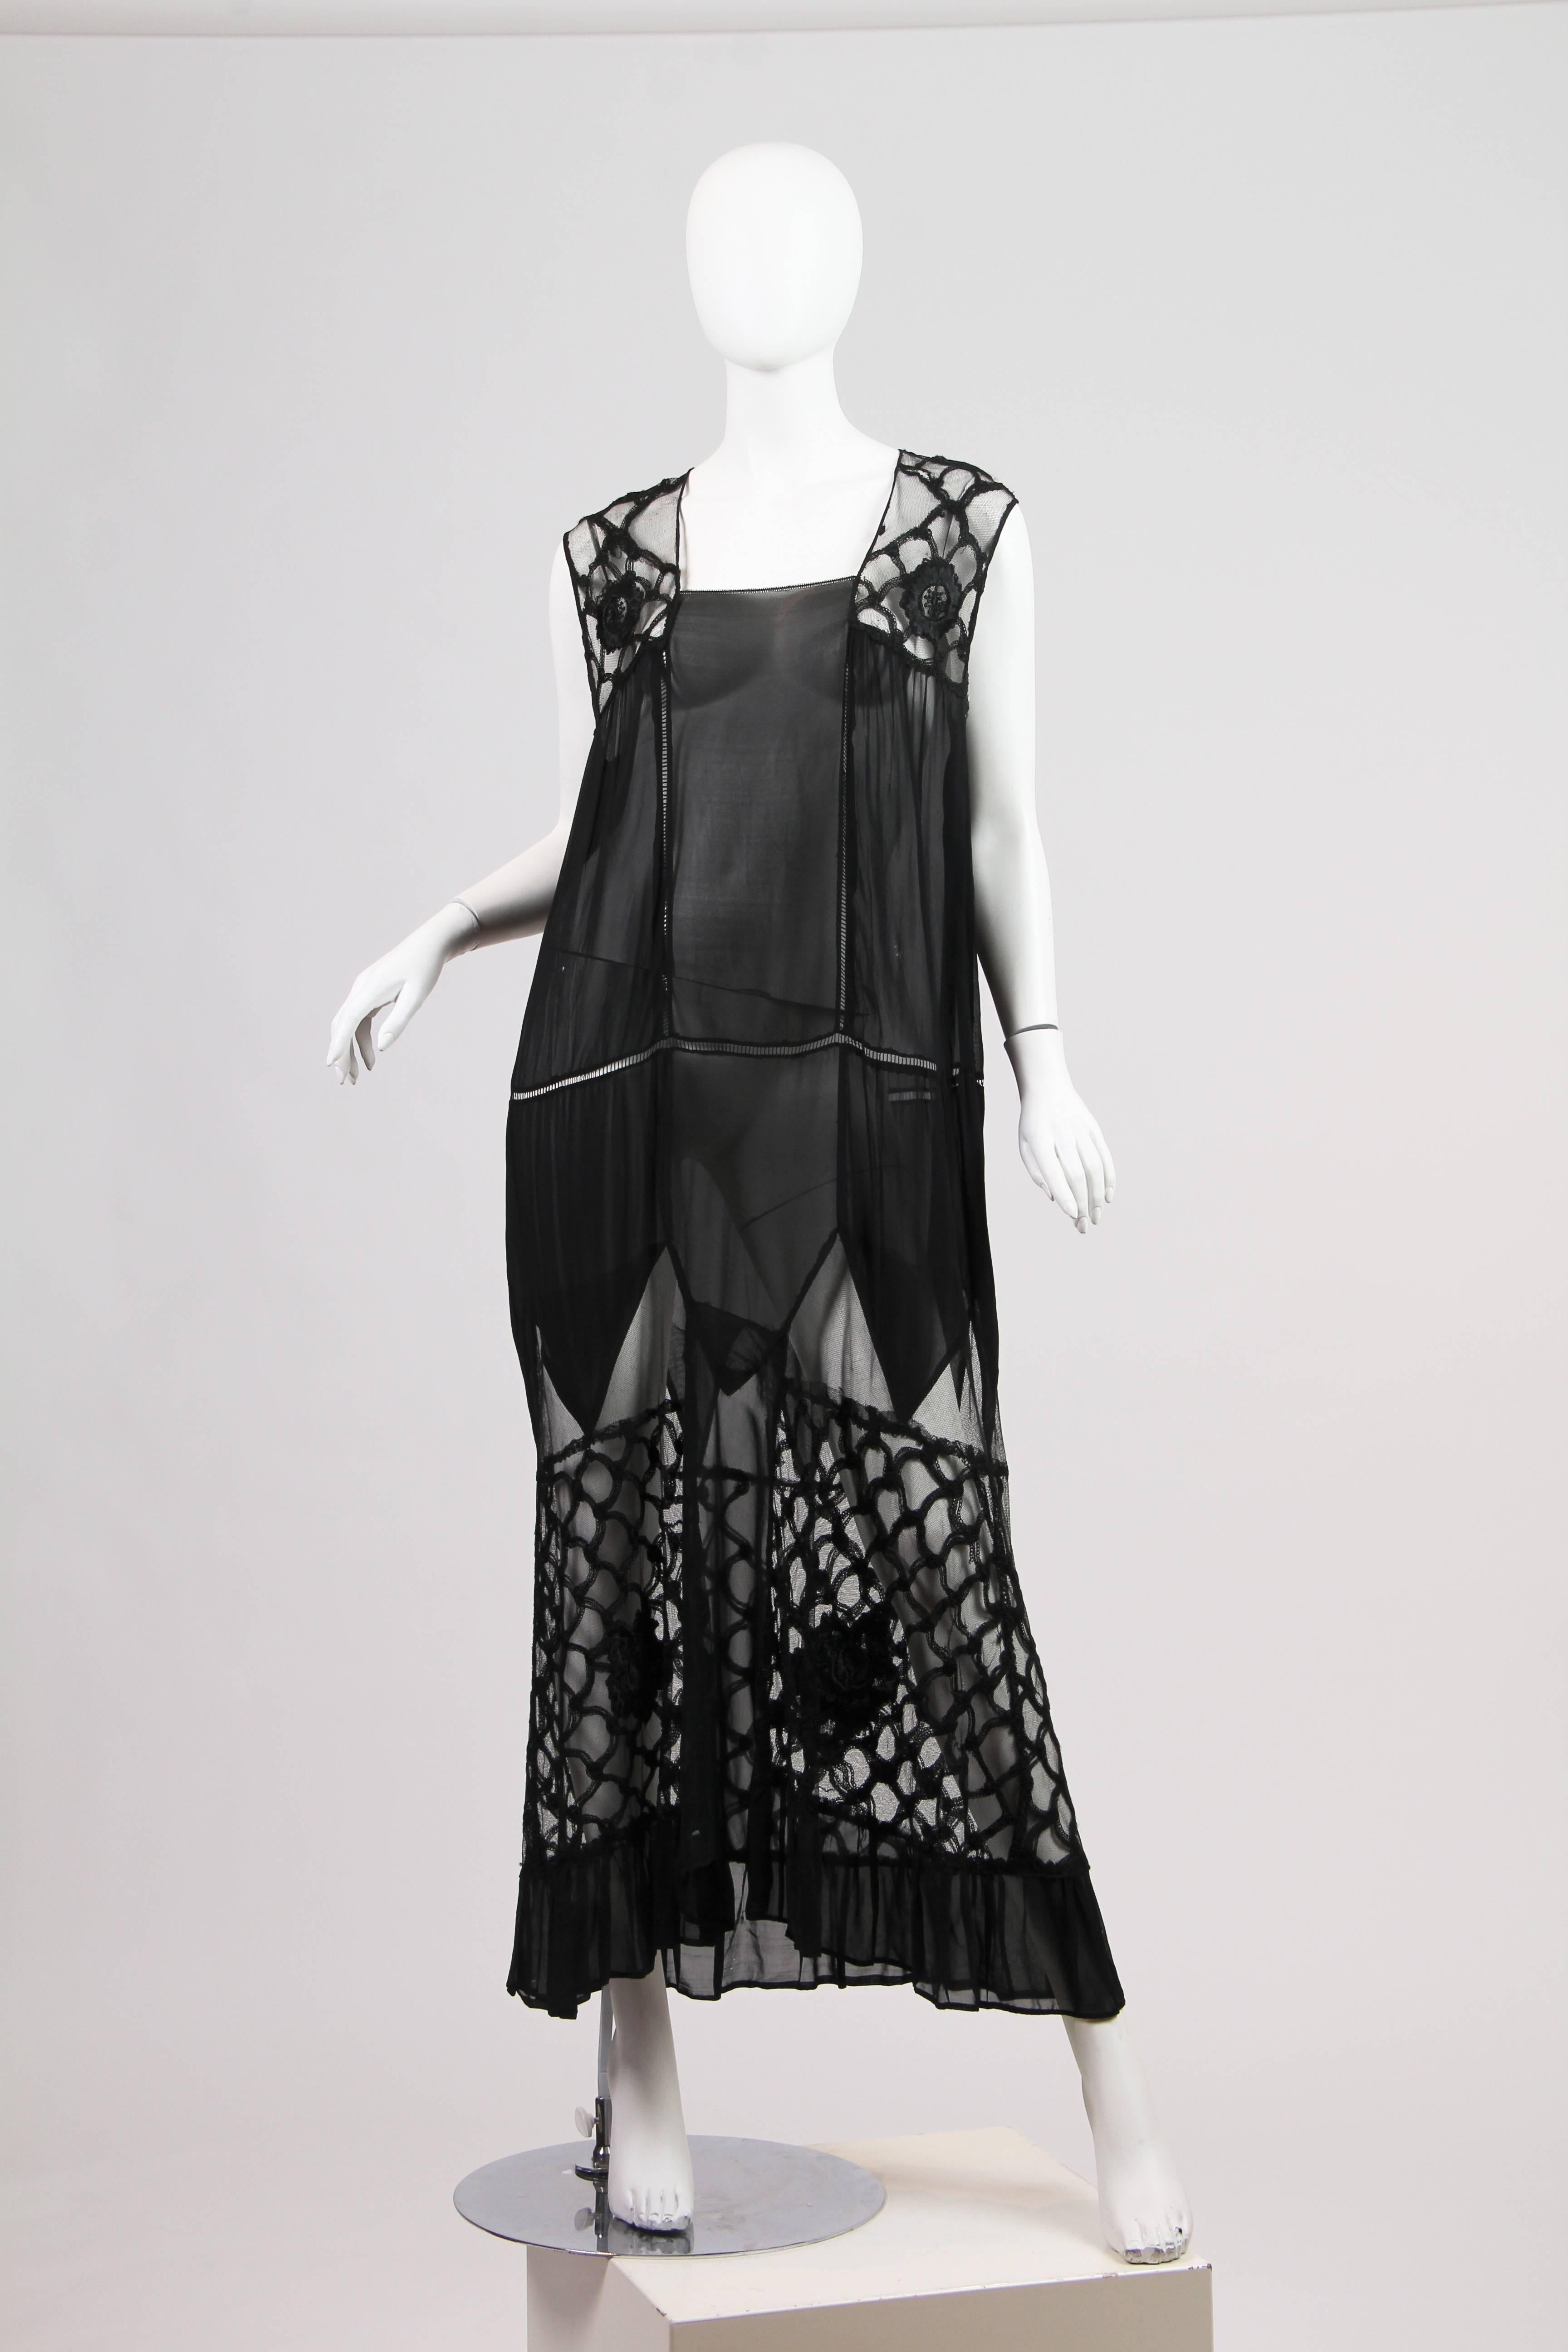 Black Early 1920s Chiffon and Lace Dress